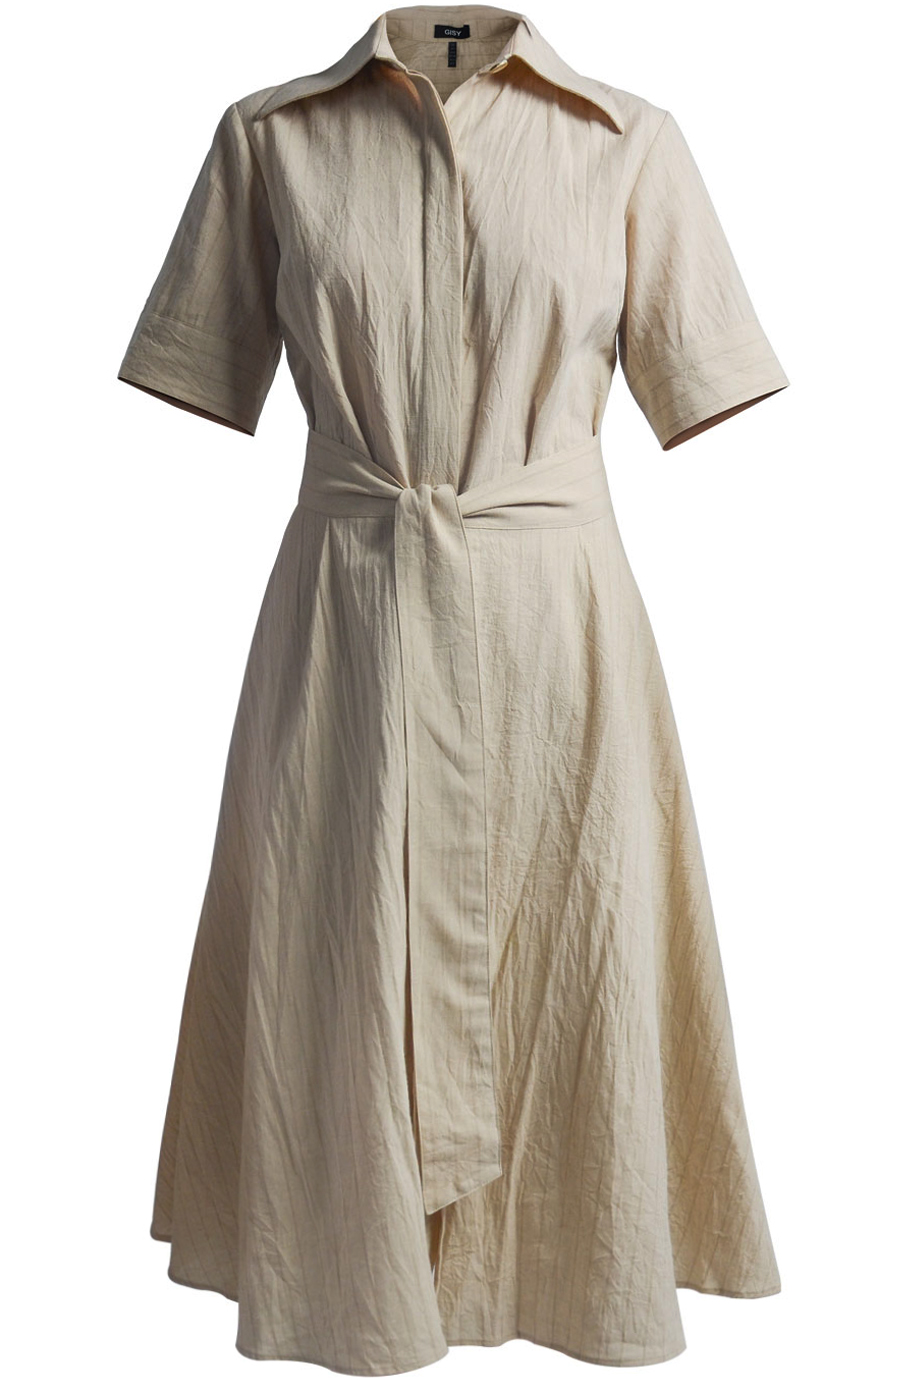 Đầm Jody  Linen Shirt Dress/ Beige 2248